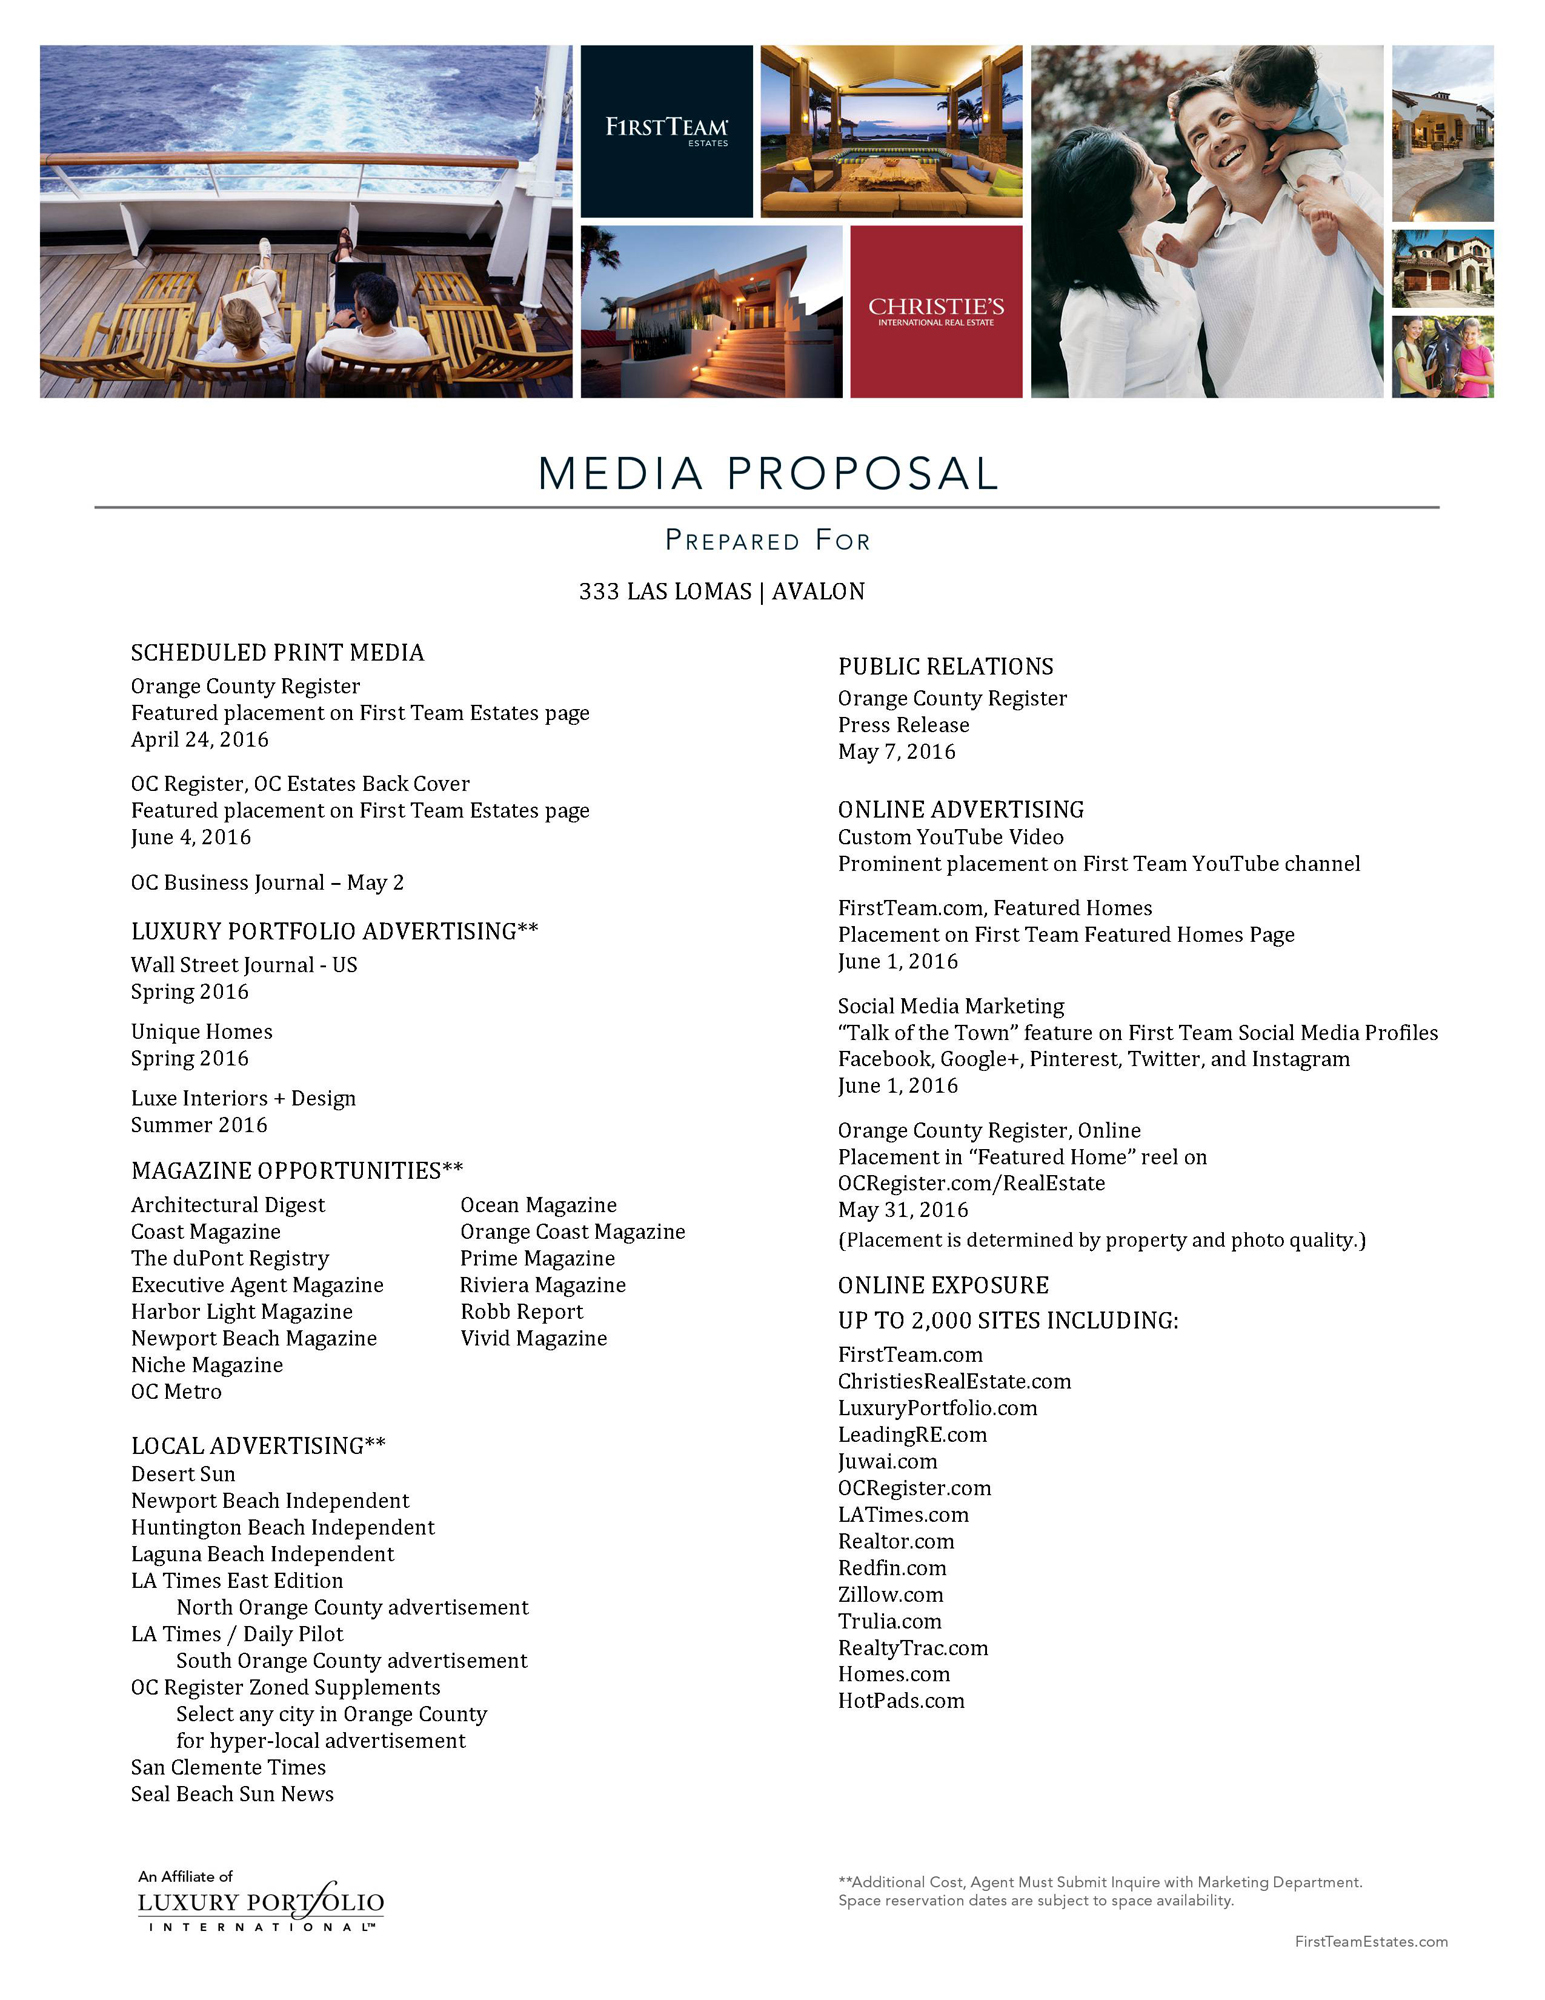 333 Las Lomas Media Proposal